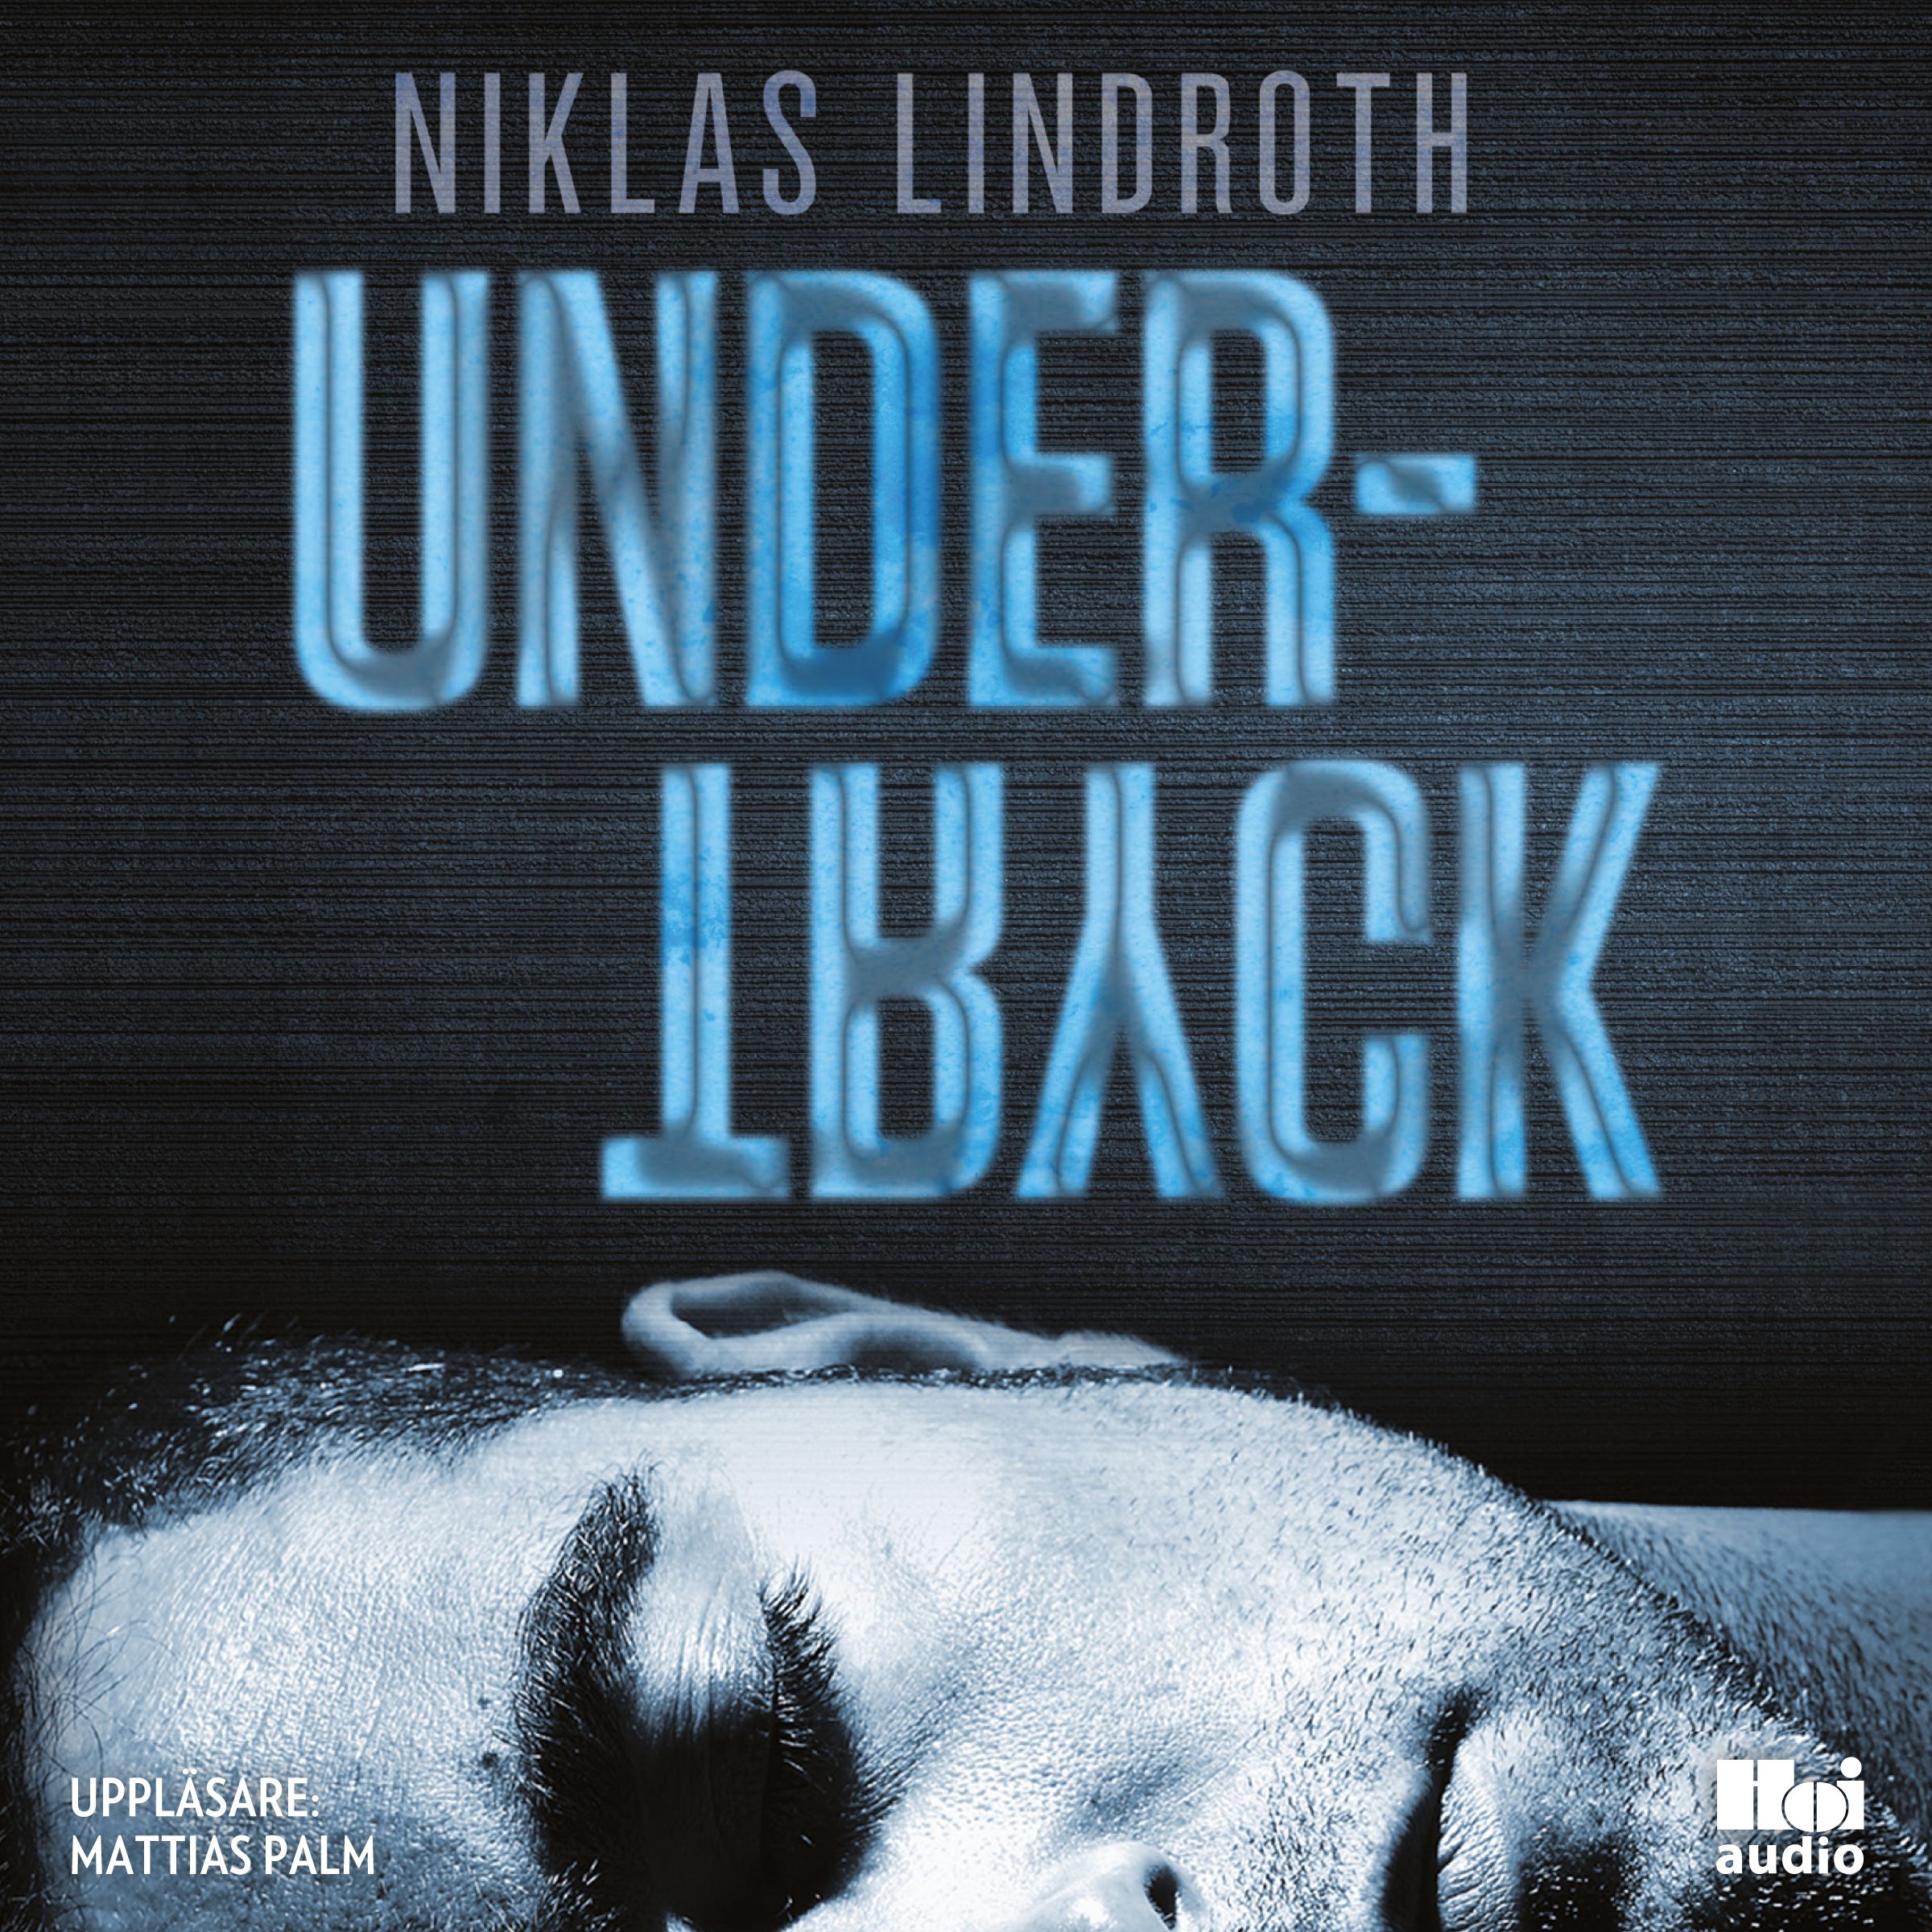 Undertryck, ljudbok av Niklas Lindroth